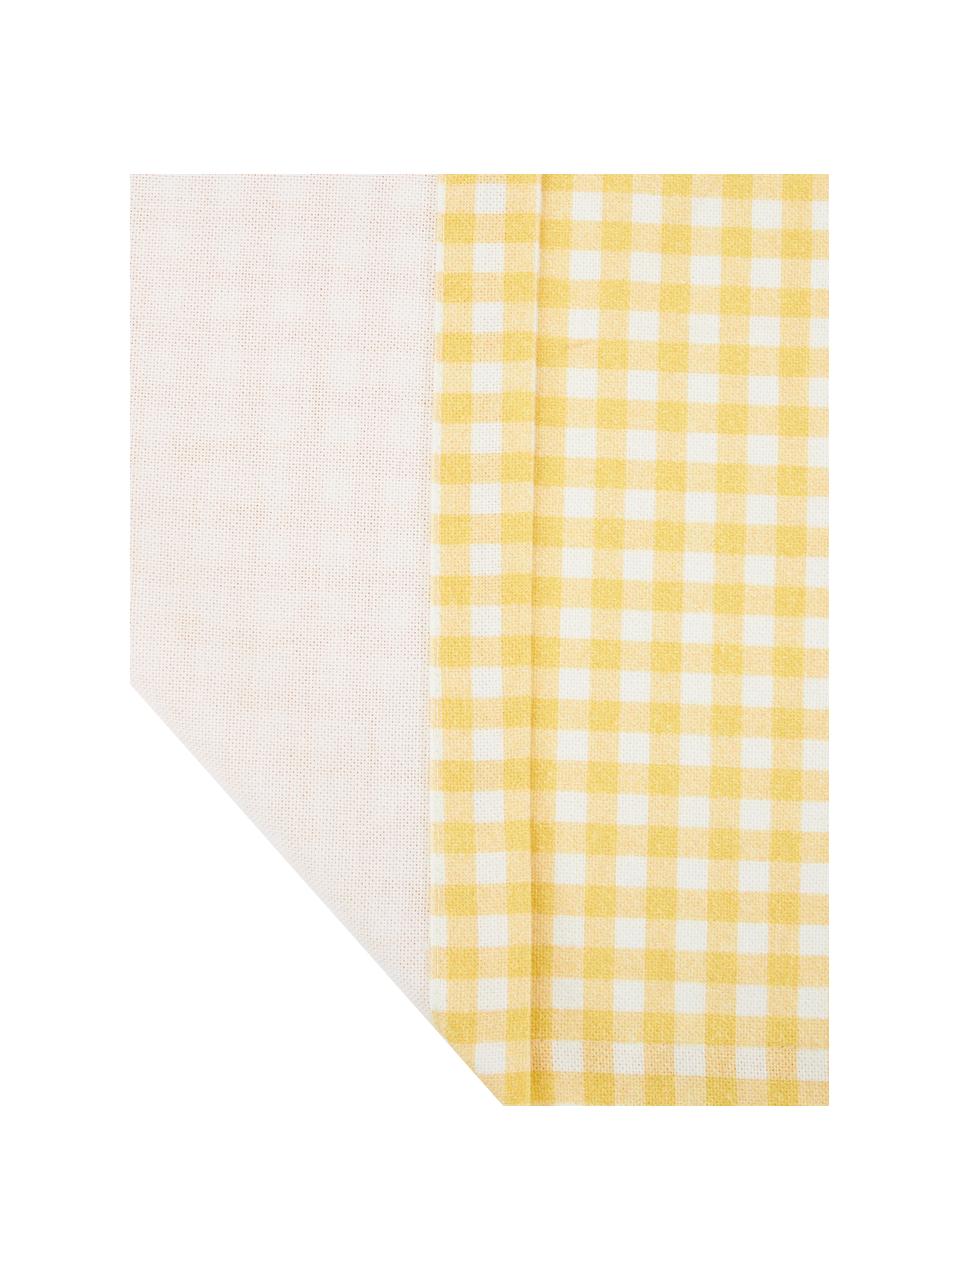 Tischläufer Vicky mit Karo-Muster, 100 % Baumwolle, Gelb, Weiß, B 40 x L 145 cm